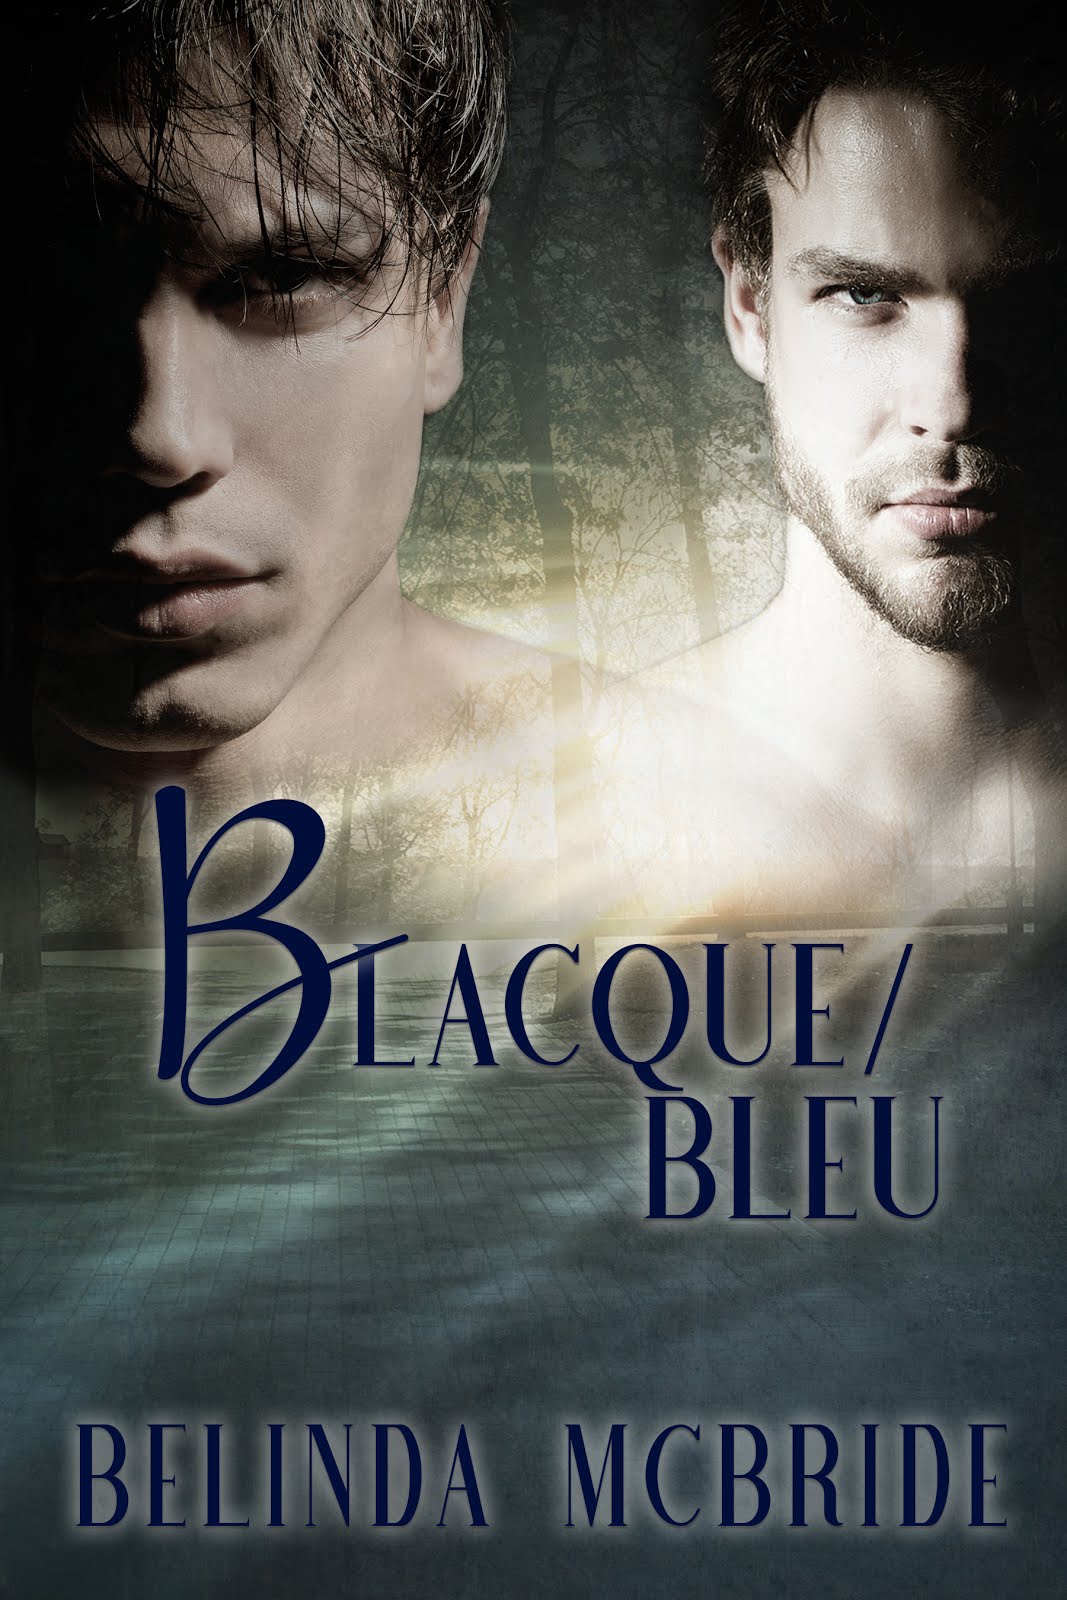 Blacque/Bleu